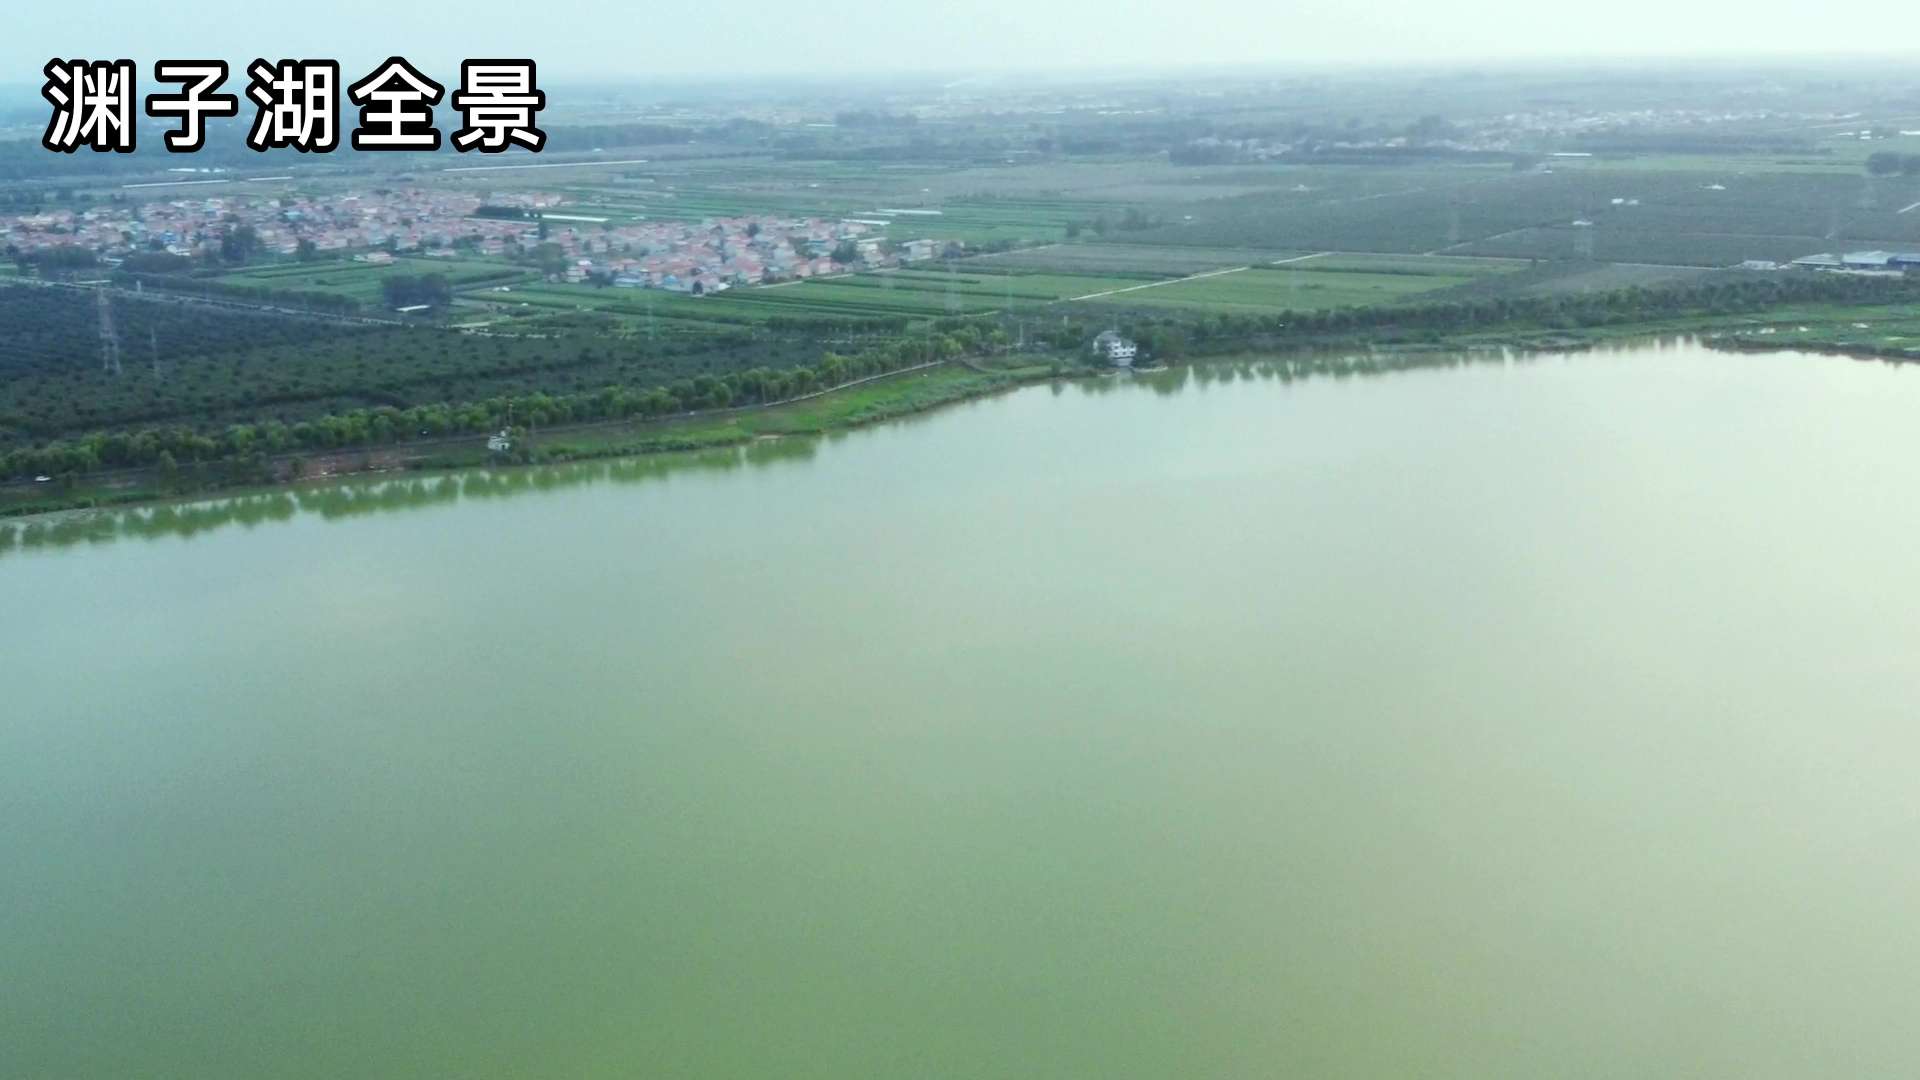 传说中贪官和坤的藏宝地 龙王庙曾所在地 徐州丰县渊子湖